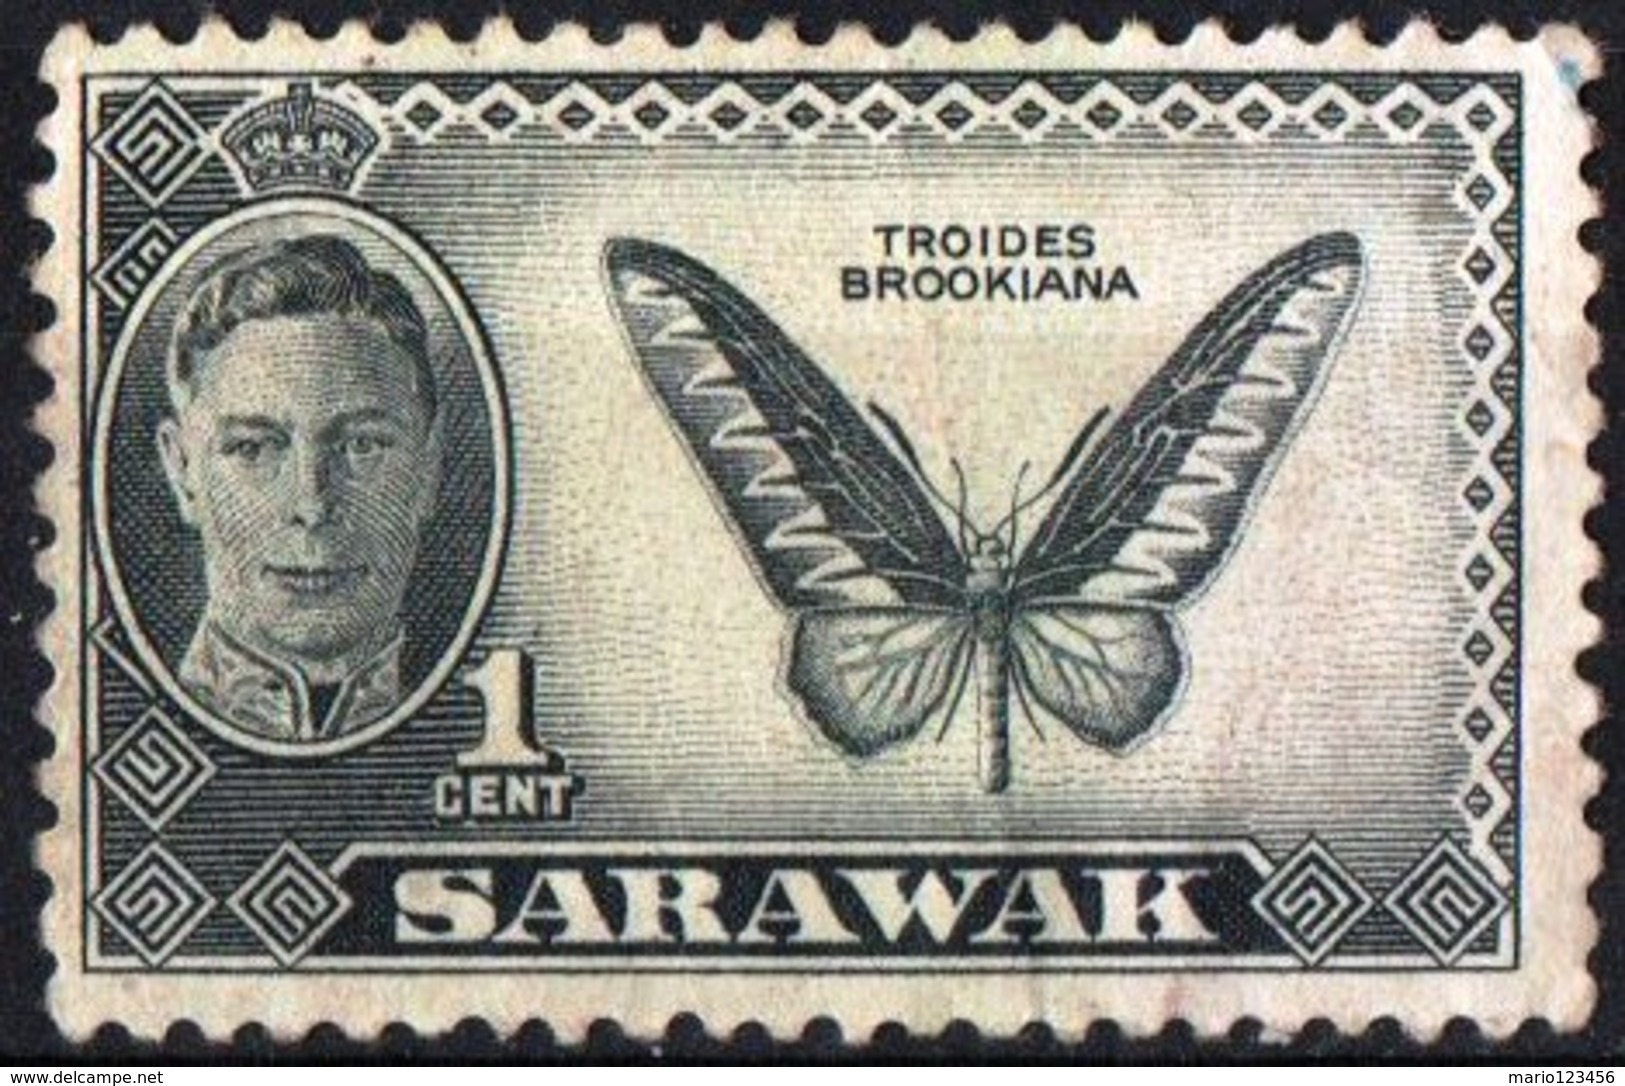 SARAWAK, COLONIA CORONA BRITANNICA, BRITISH CROWN COLONY, FAUNA, INSETTI, FARFALLE, 1950, NUOVO (MLH*) Scott 180 - Sarawak (...-1963)